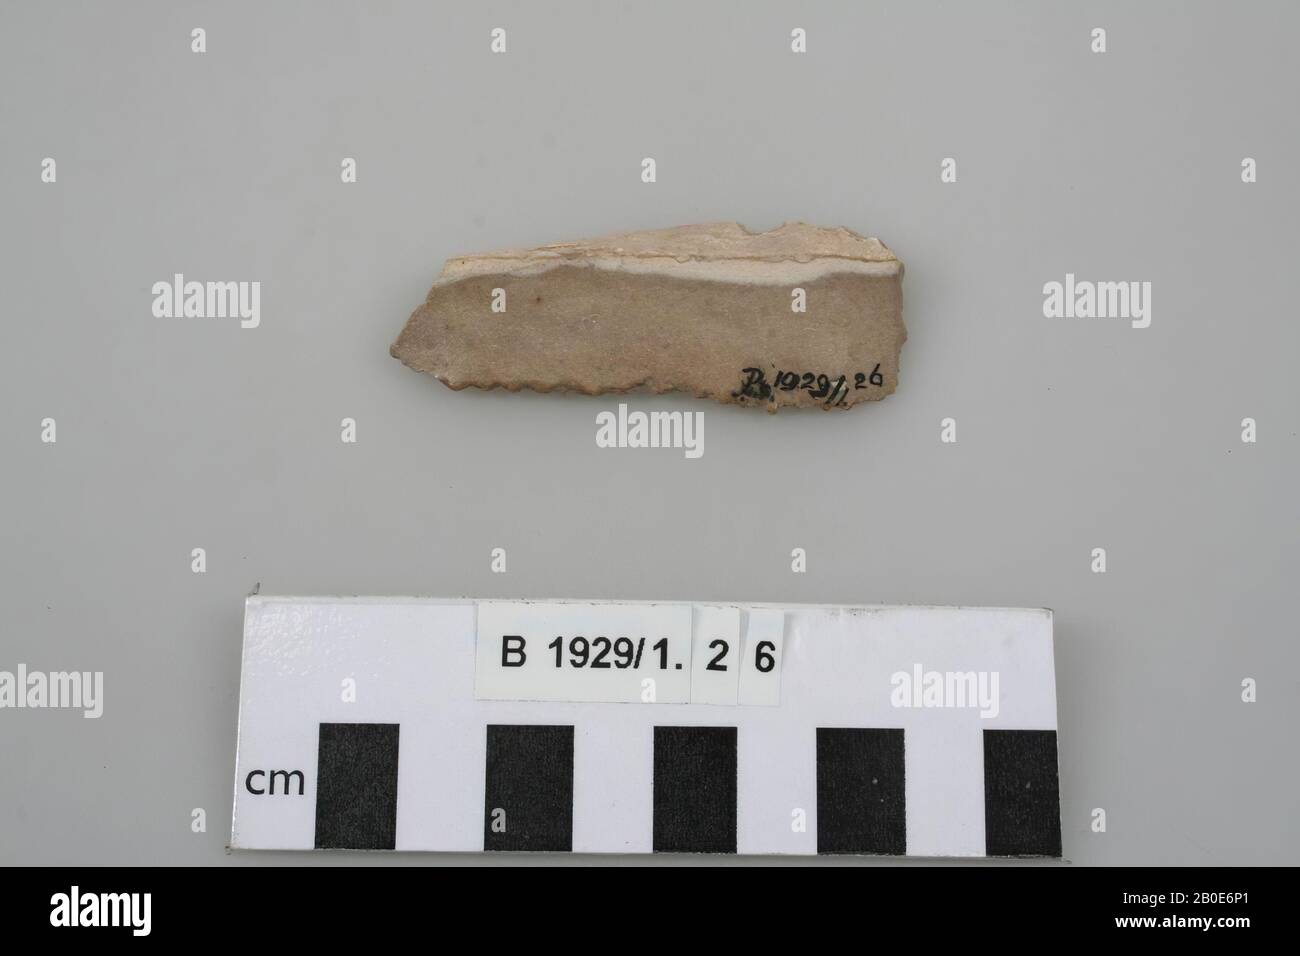 Ancien Proche-Orient, outil, pierre, silex, L 6,7 cm, lieu, Palestine Banque D'Images